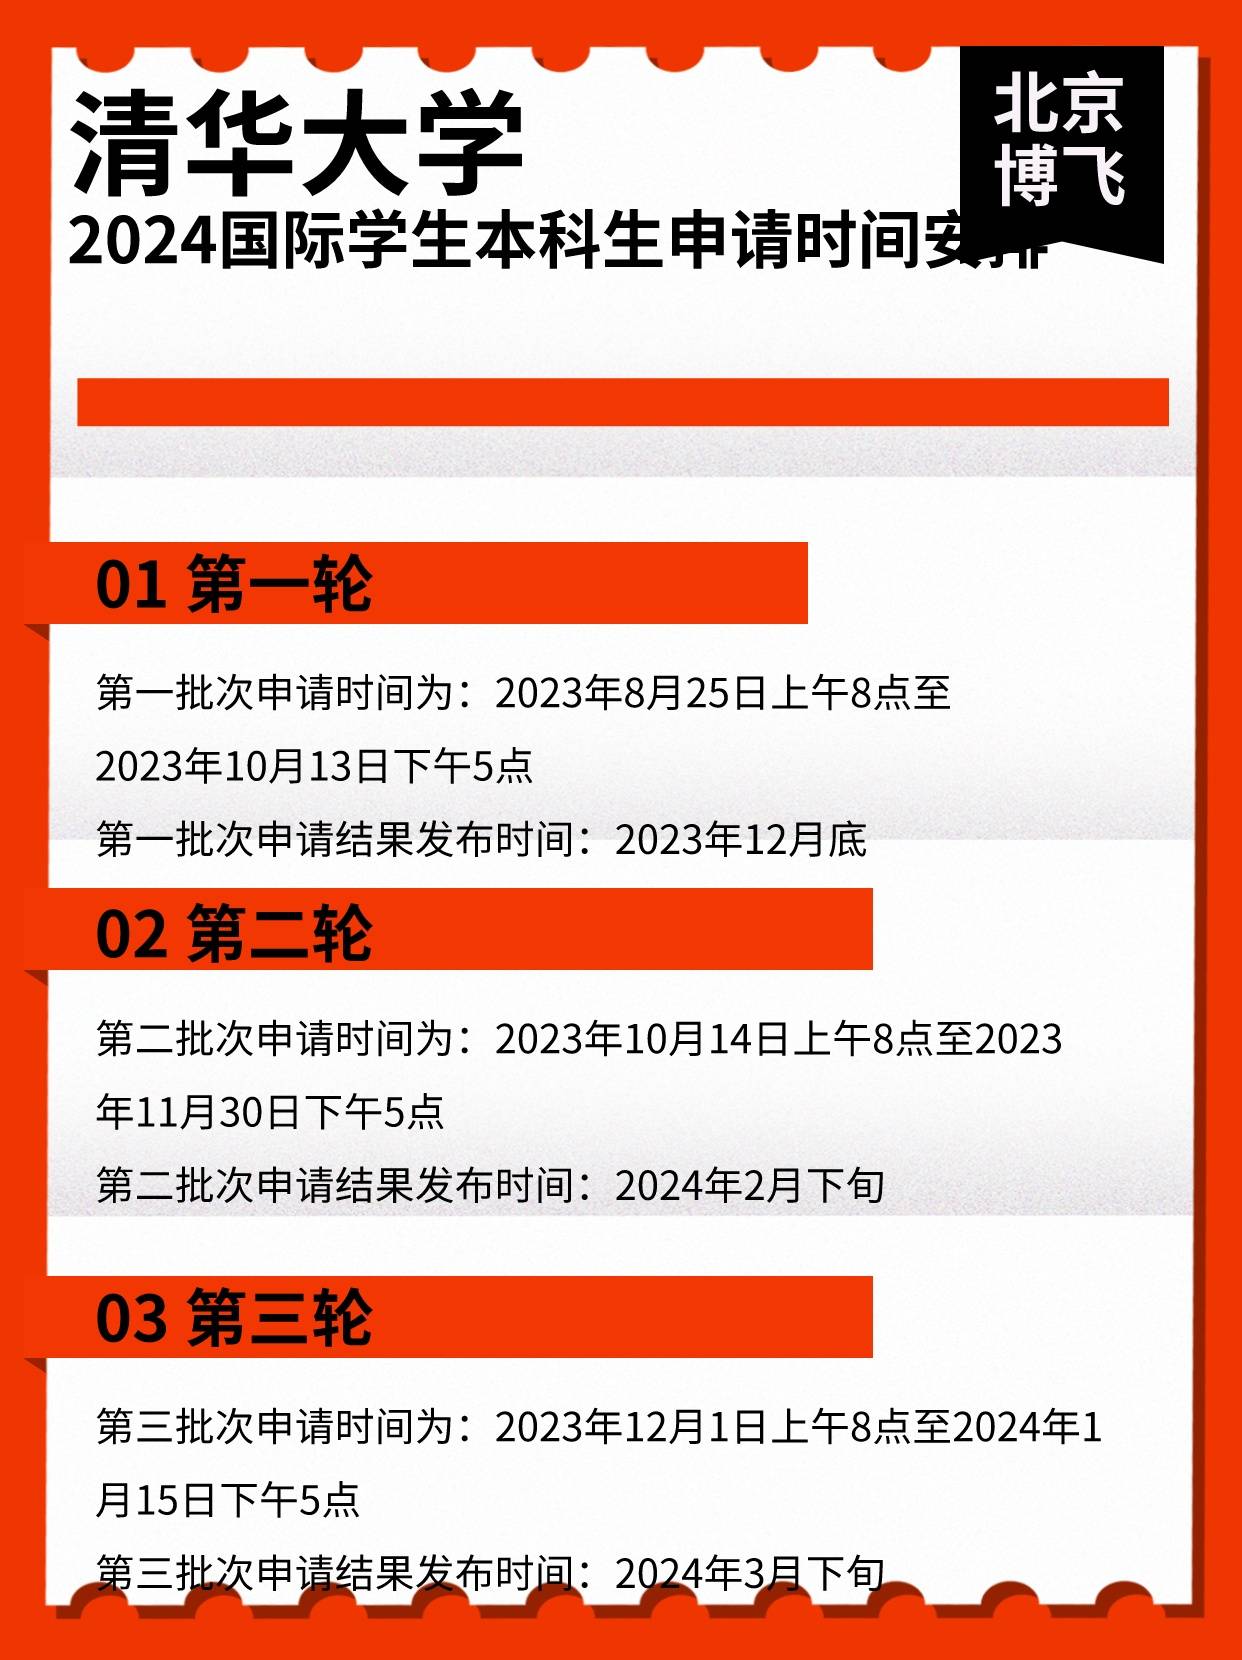 清华大学2024外国留学生来华本科生招生日程发布_手机搜狐网